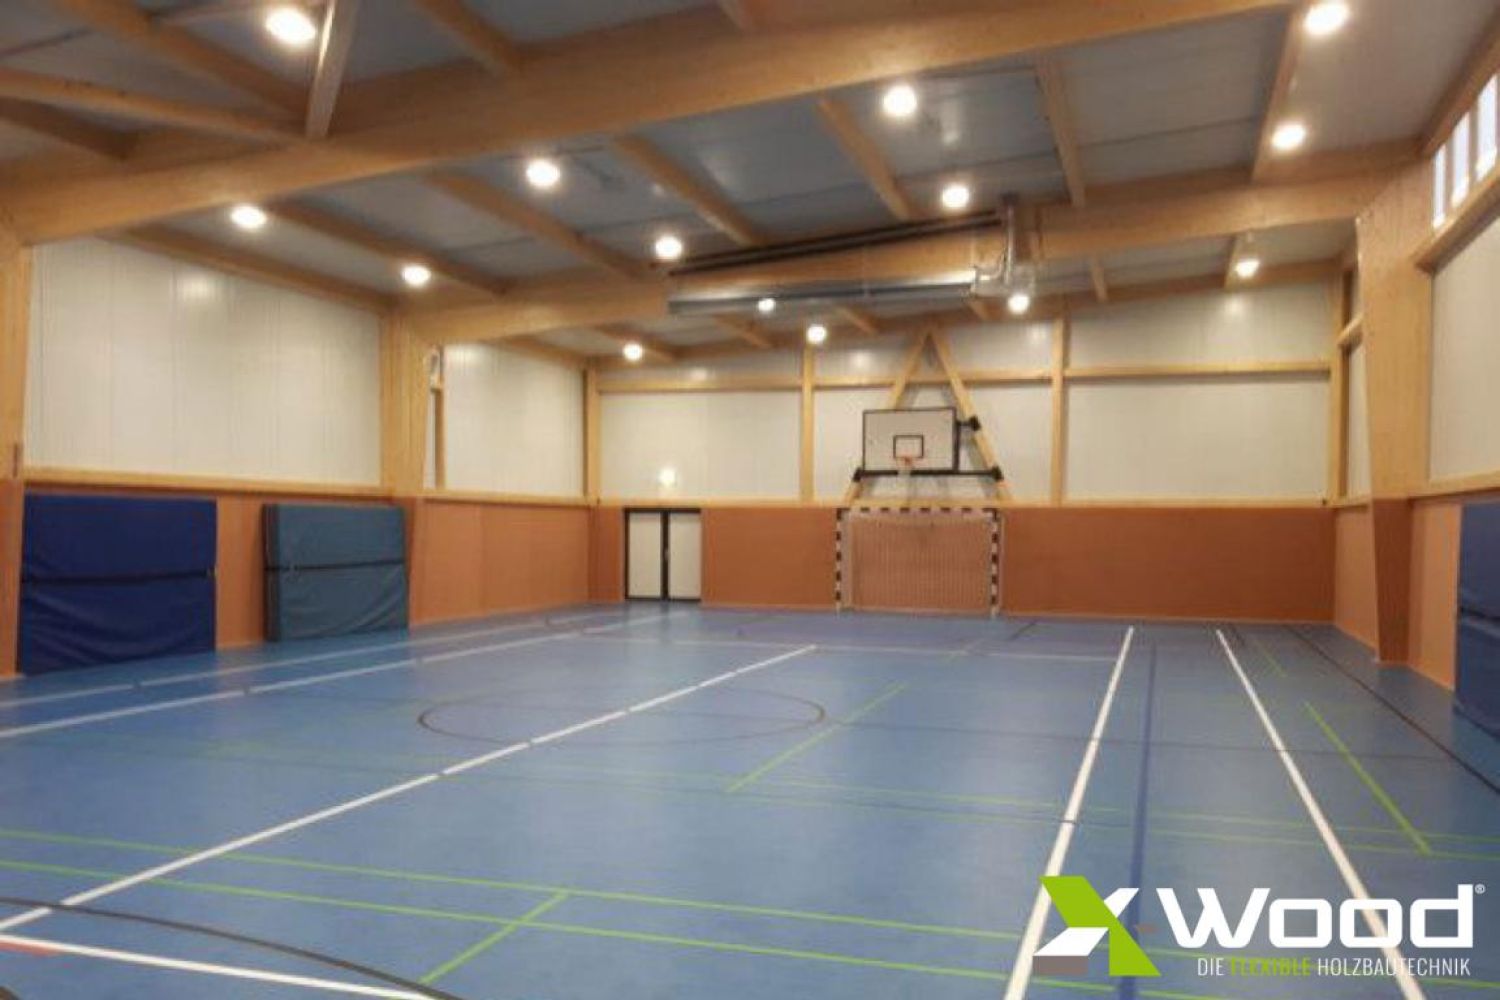 SV Frauenberg - Euskirchen - Sporthalle von X-Wood